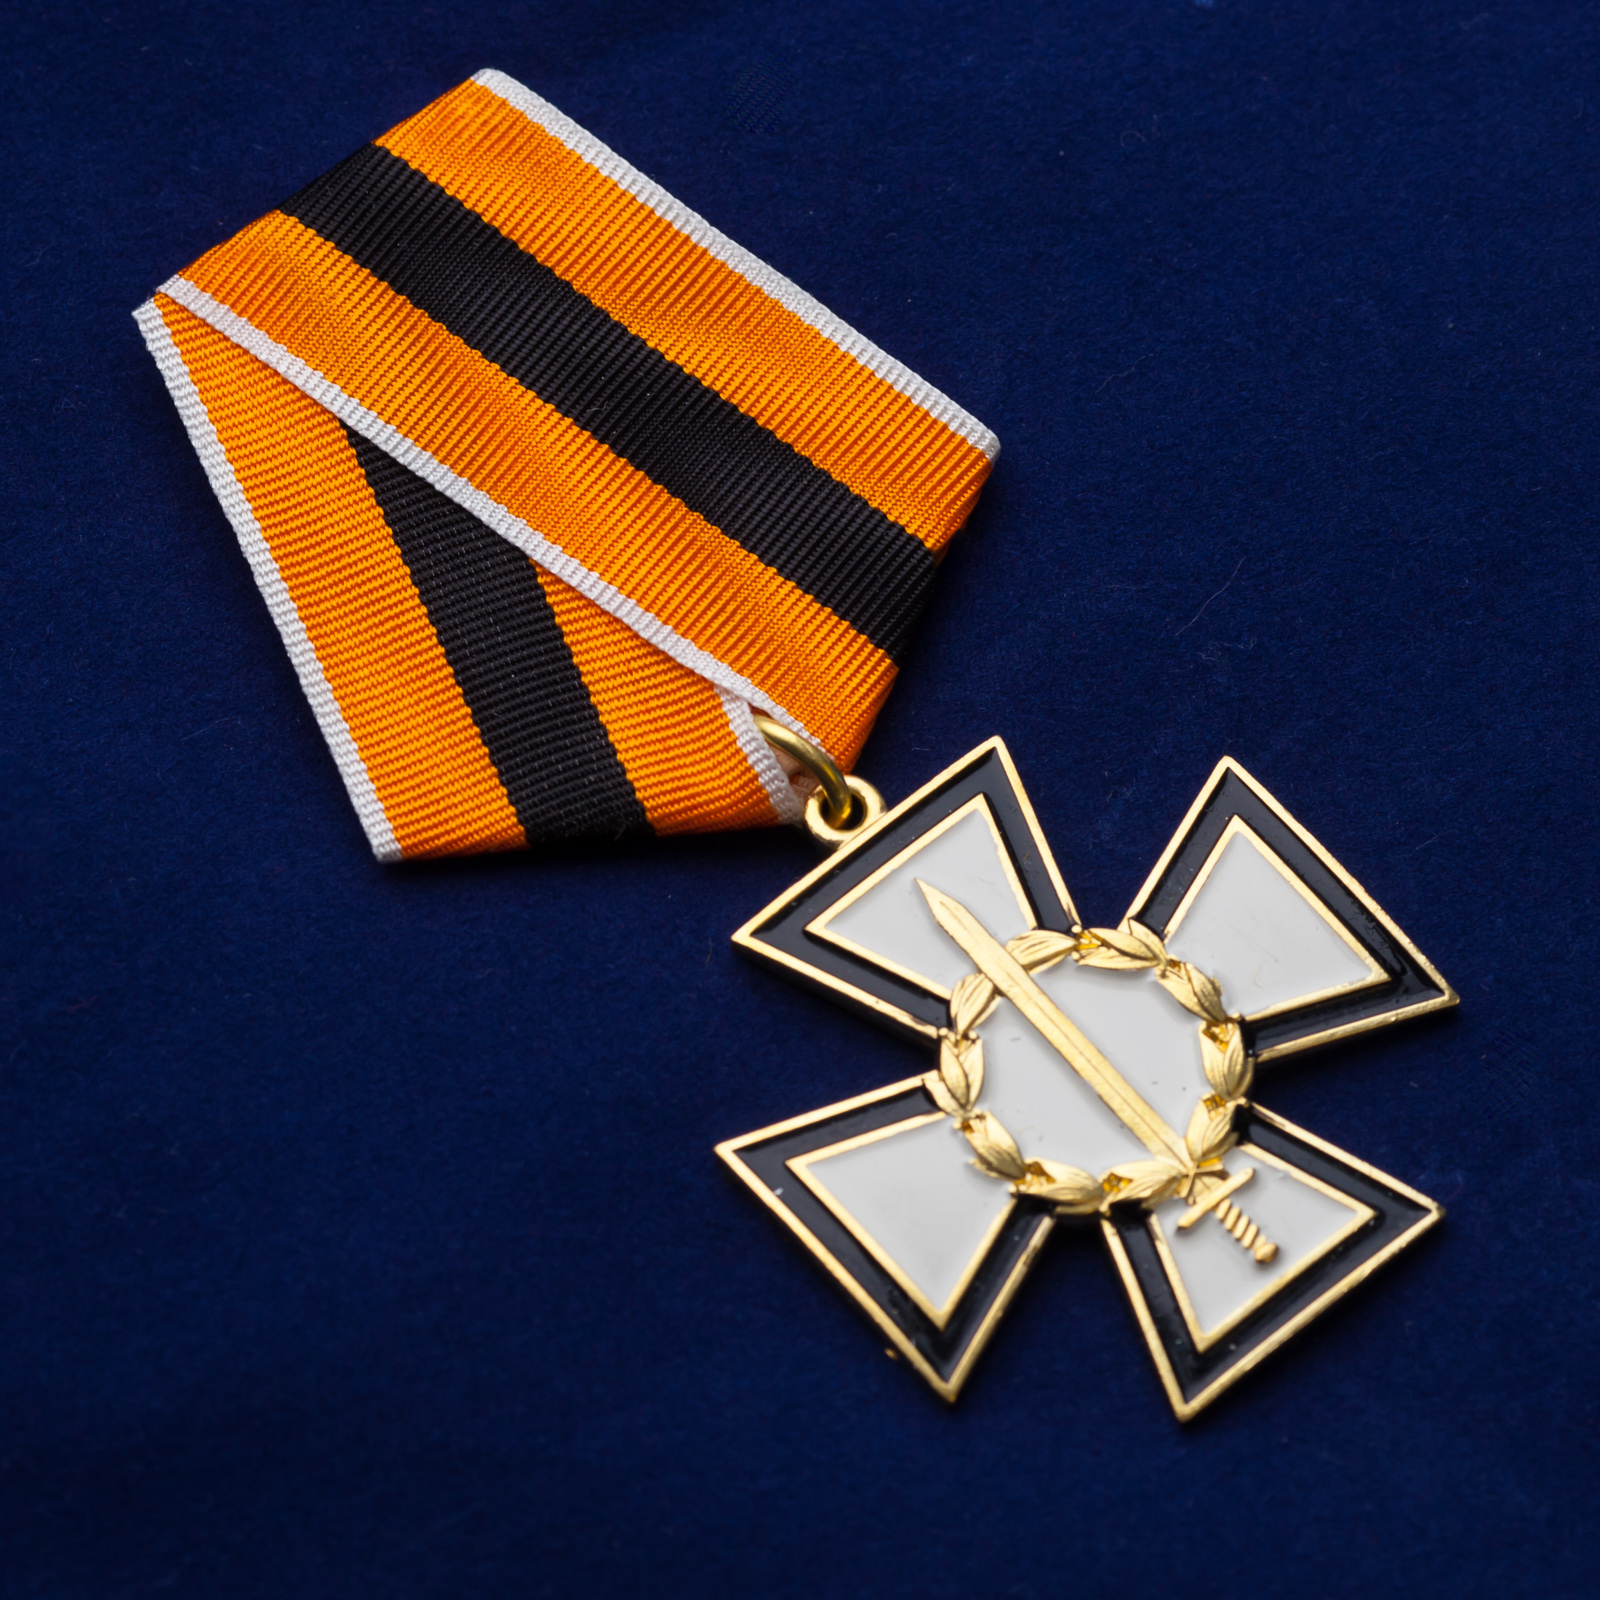 Медаль "За честь и верность" 